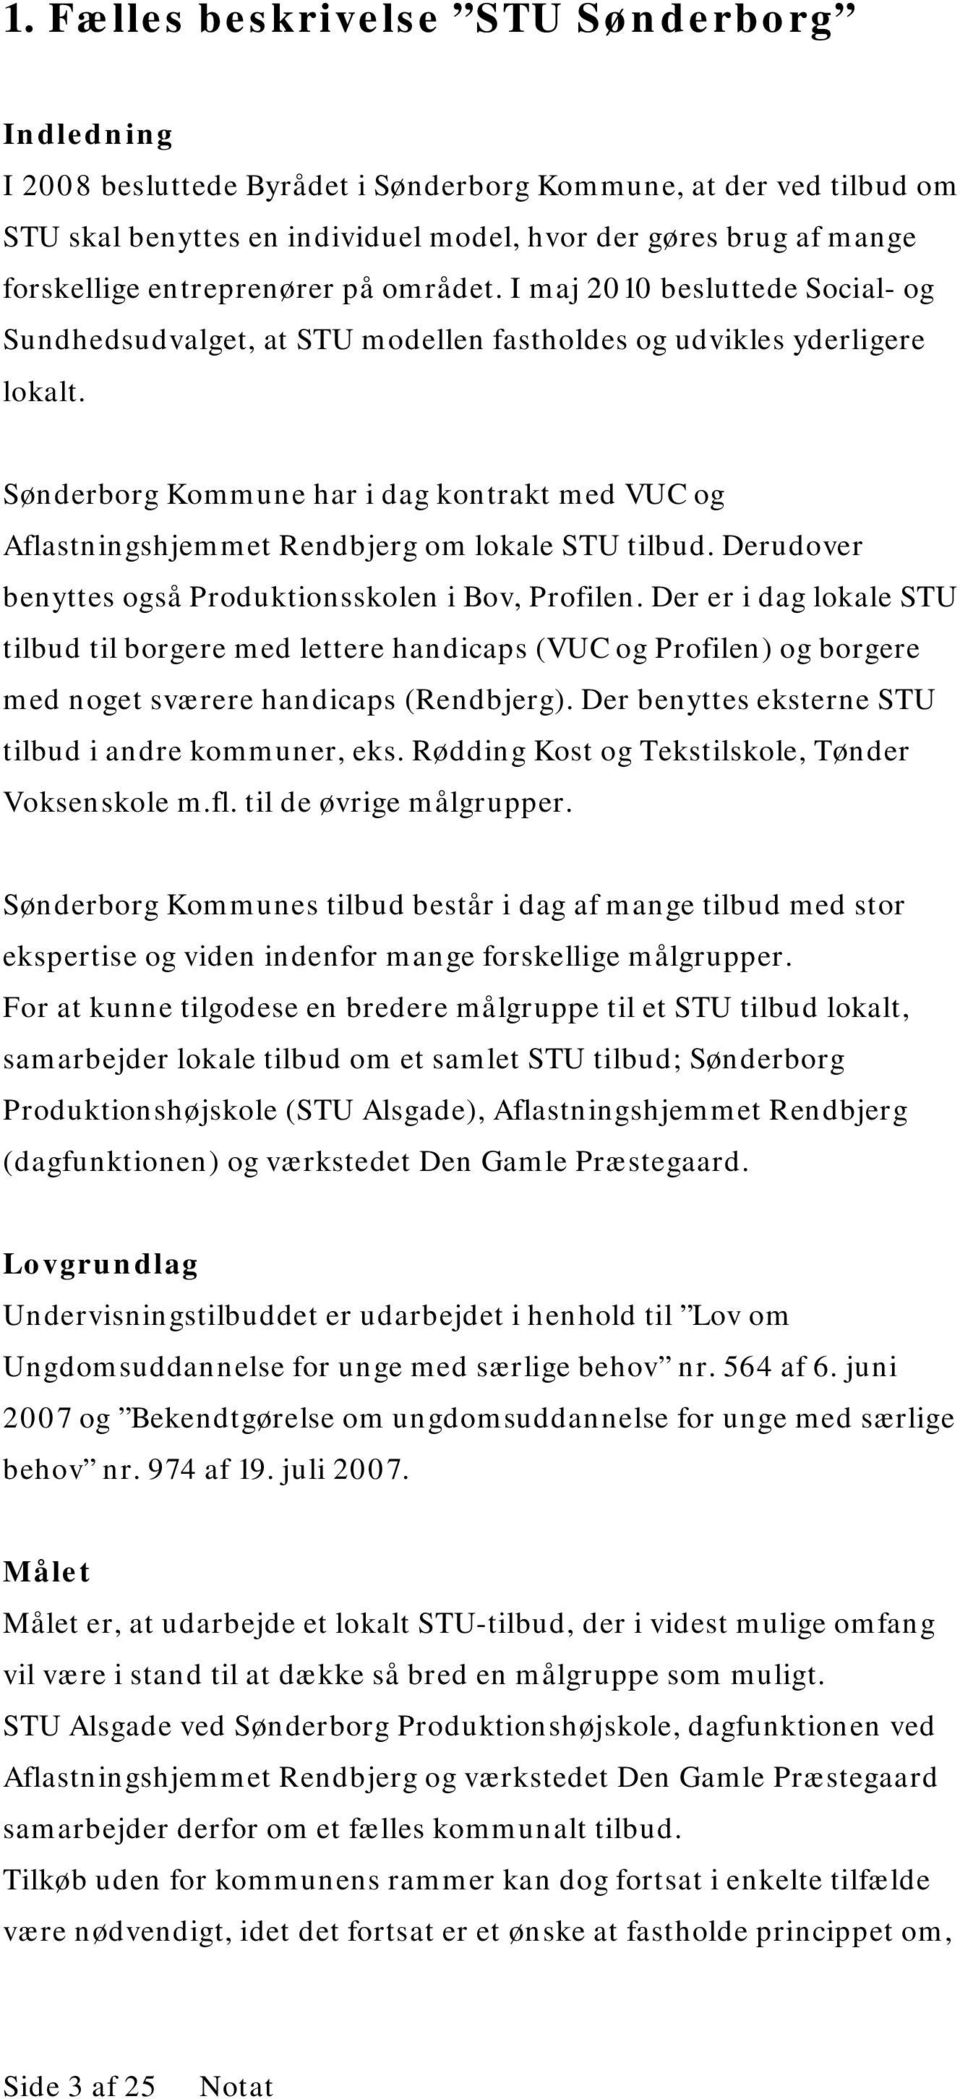 Sønderborg Kommune har i dag kontrakt med VUC og Aflastningshjemmet Rendbjerg om lokale STU tilbud. Derudover benyttes også Produktionsskolen i Bov, Profilen.